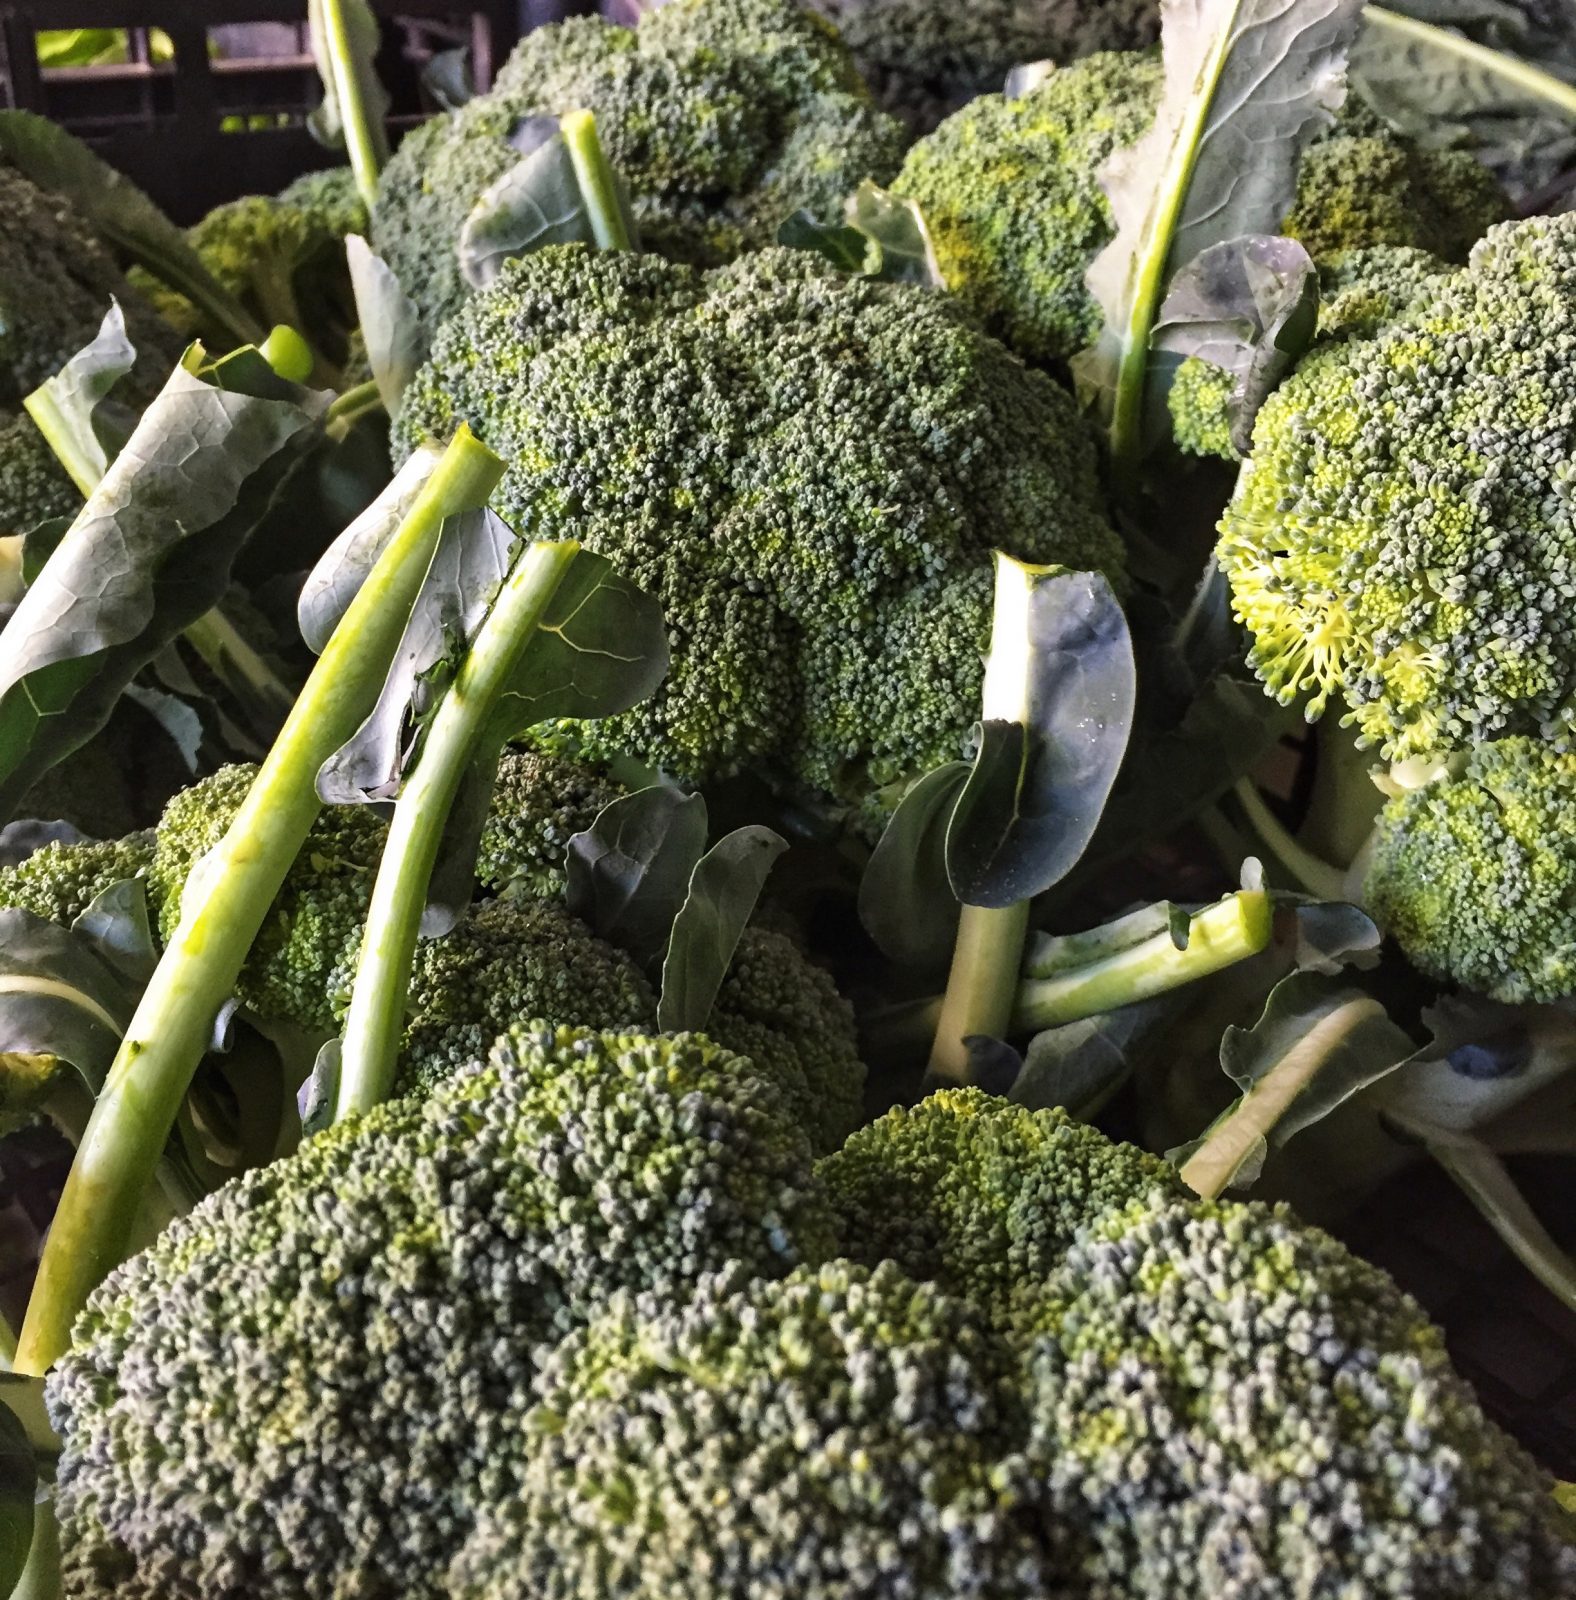 Broccolo Siciliano